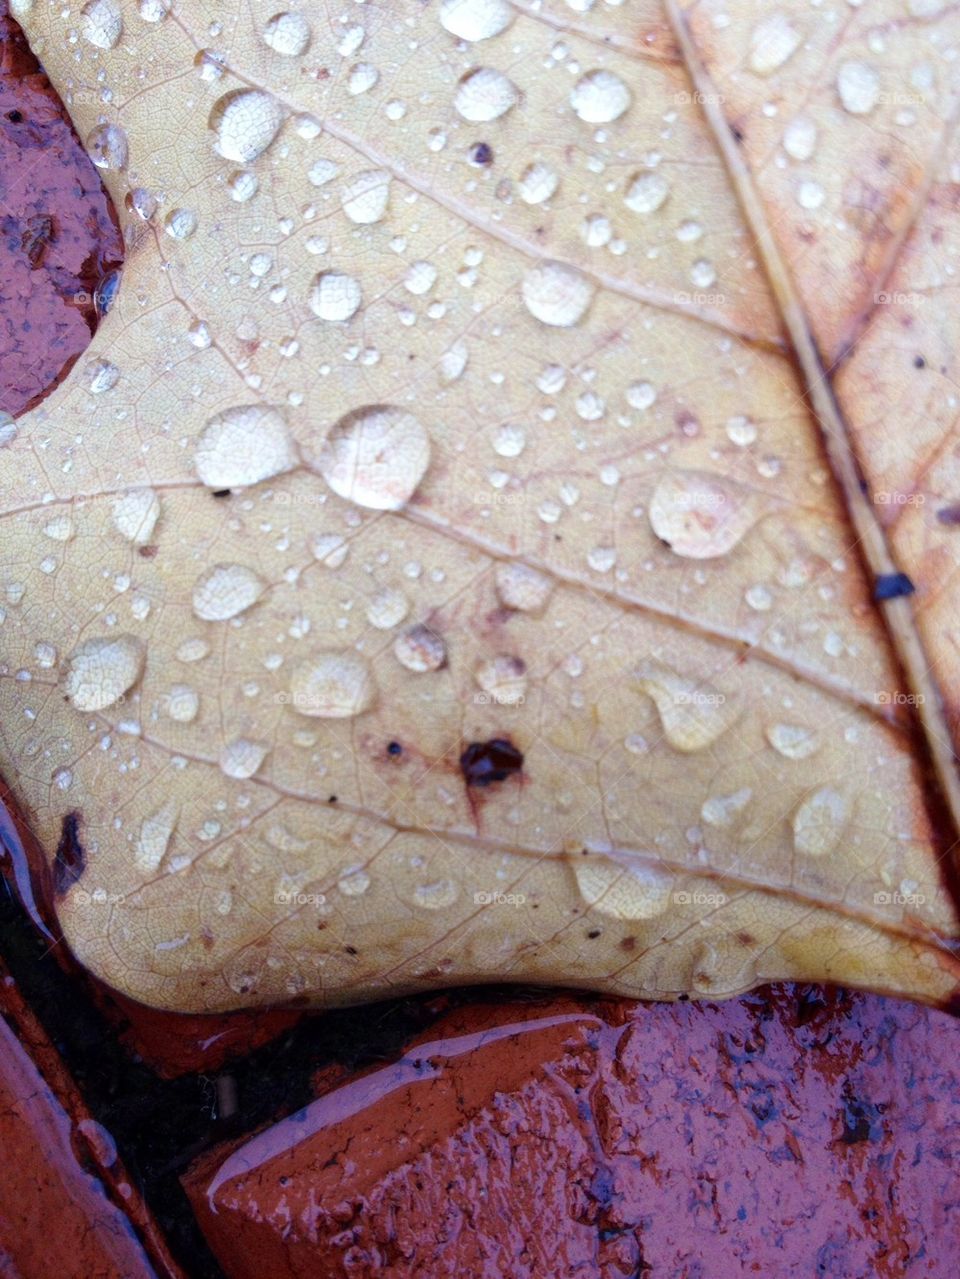 Wet leaf 